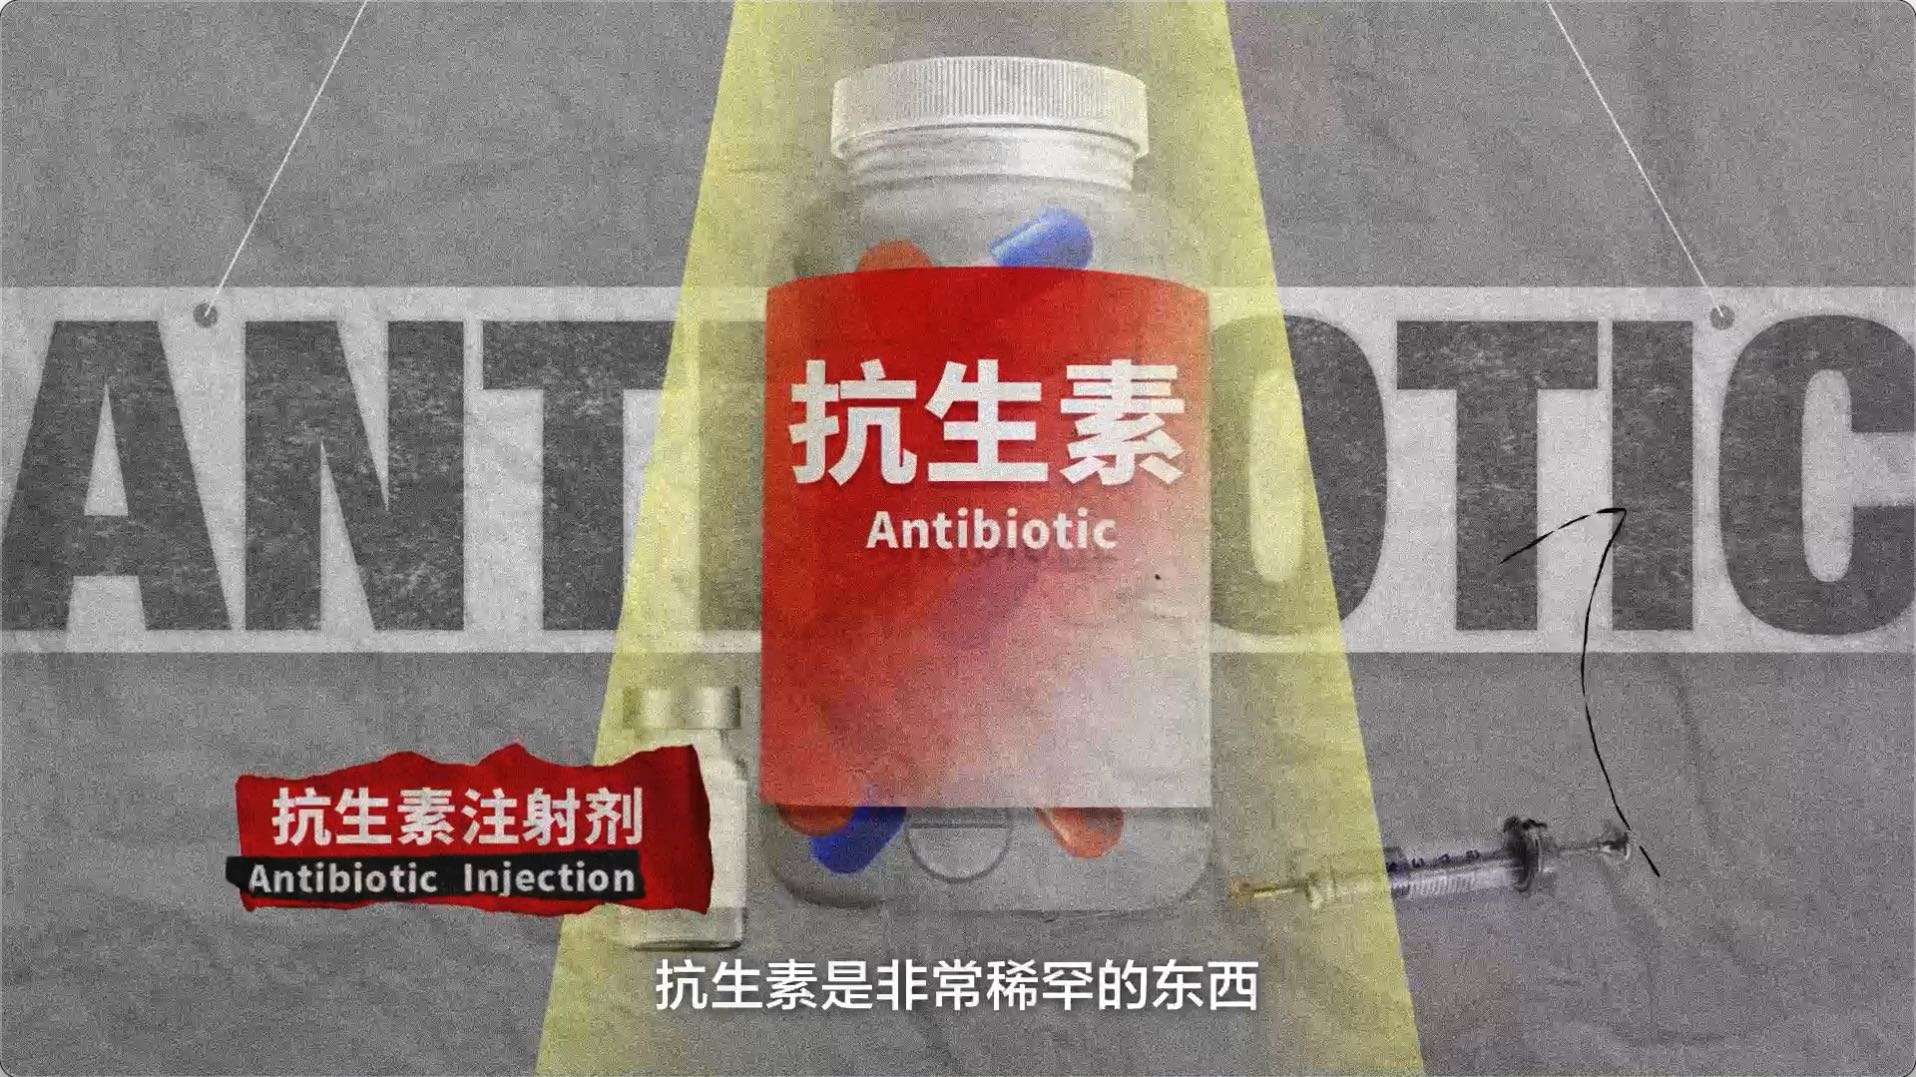 丁香医生人体漫游指南——抗生素